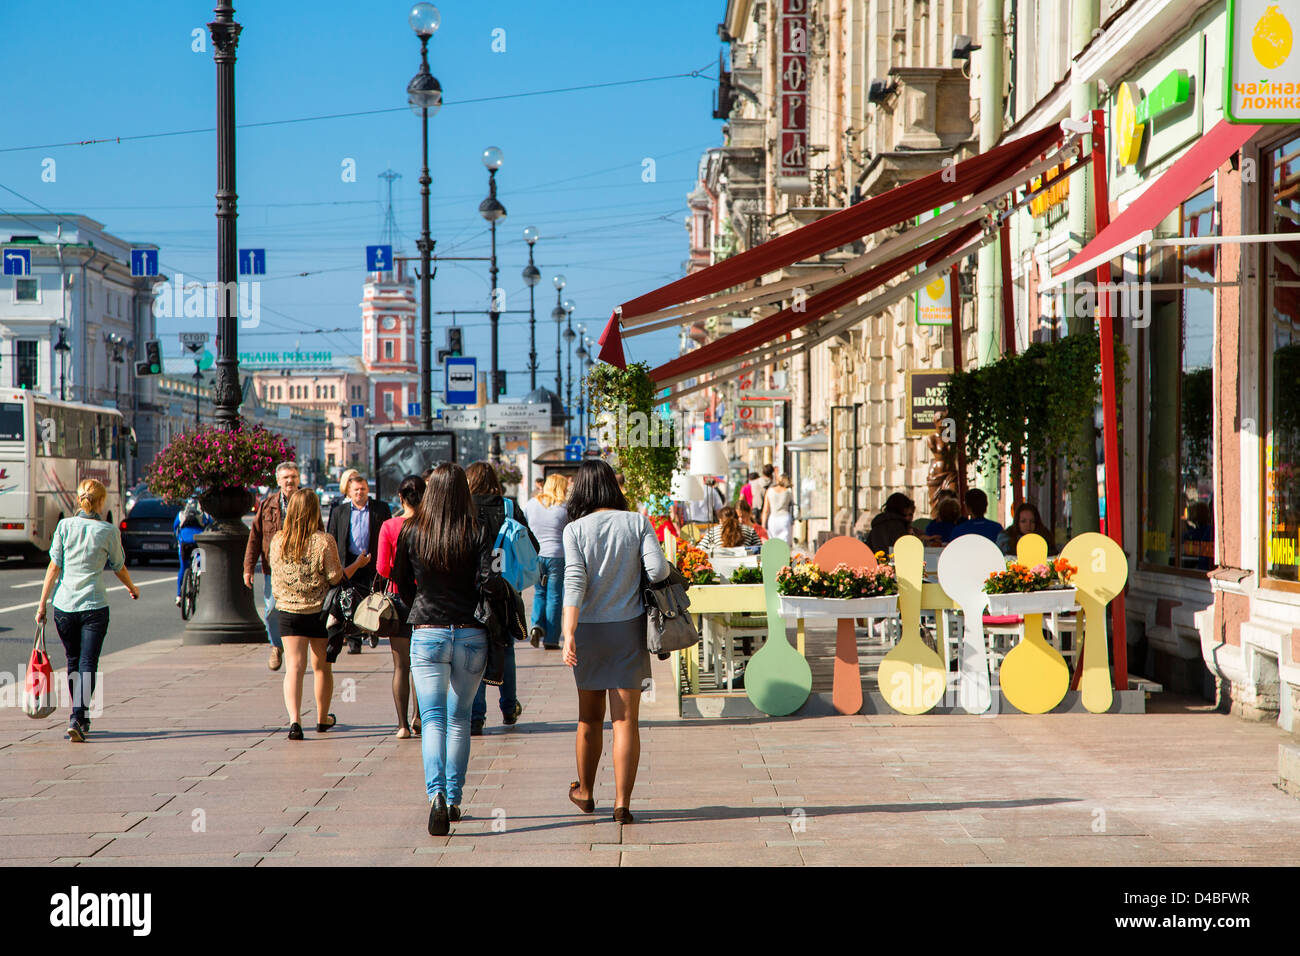 St. Petersburg, Nevsky Prospekt Avenue Stock Photo